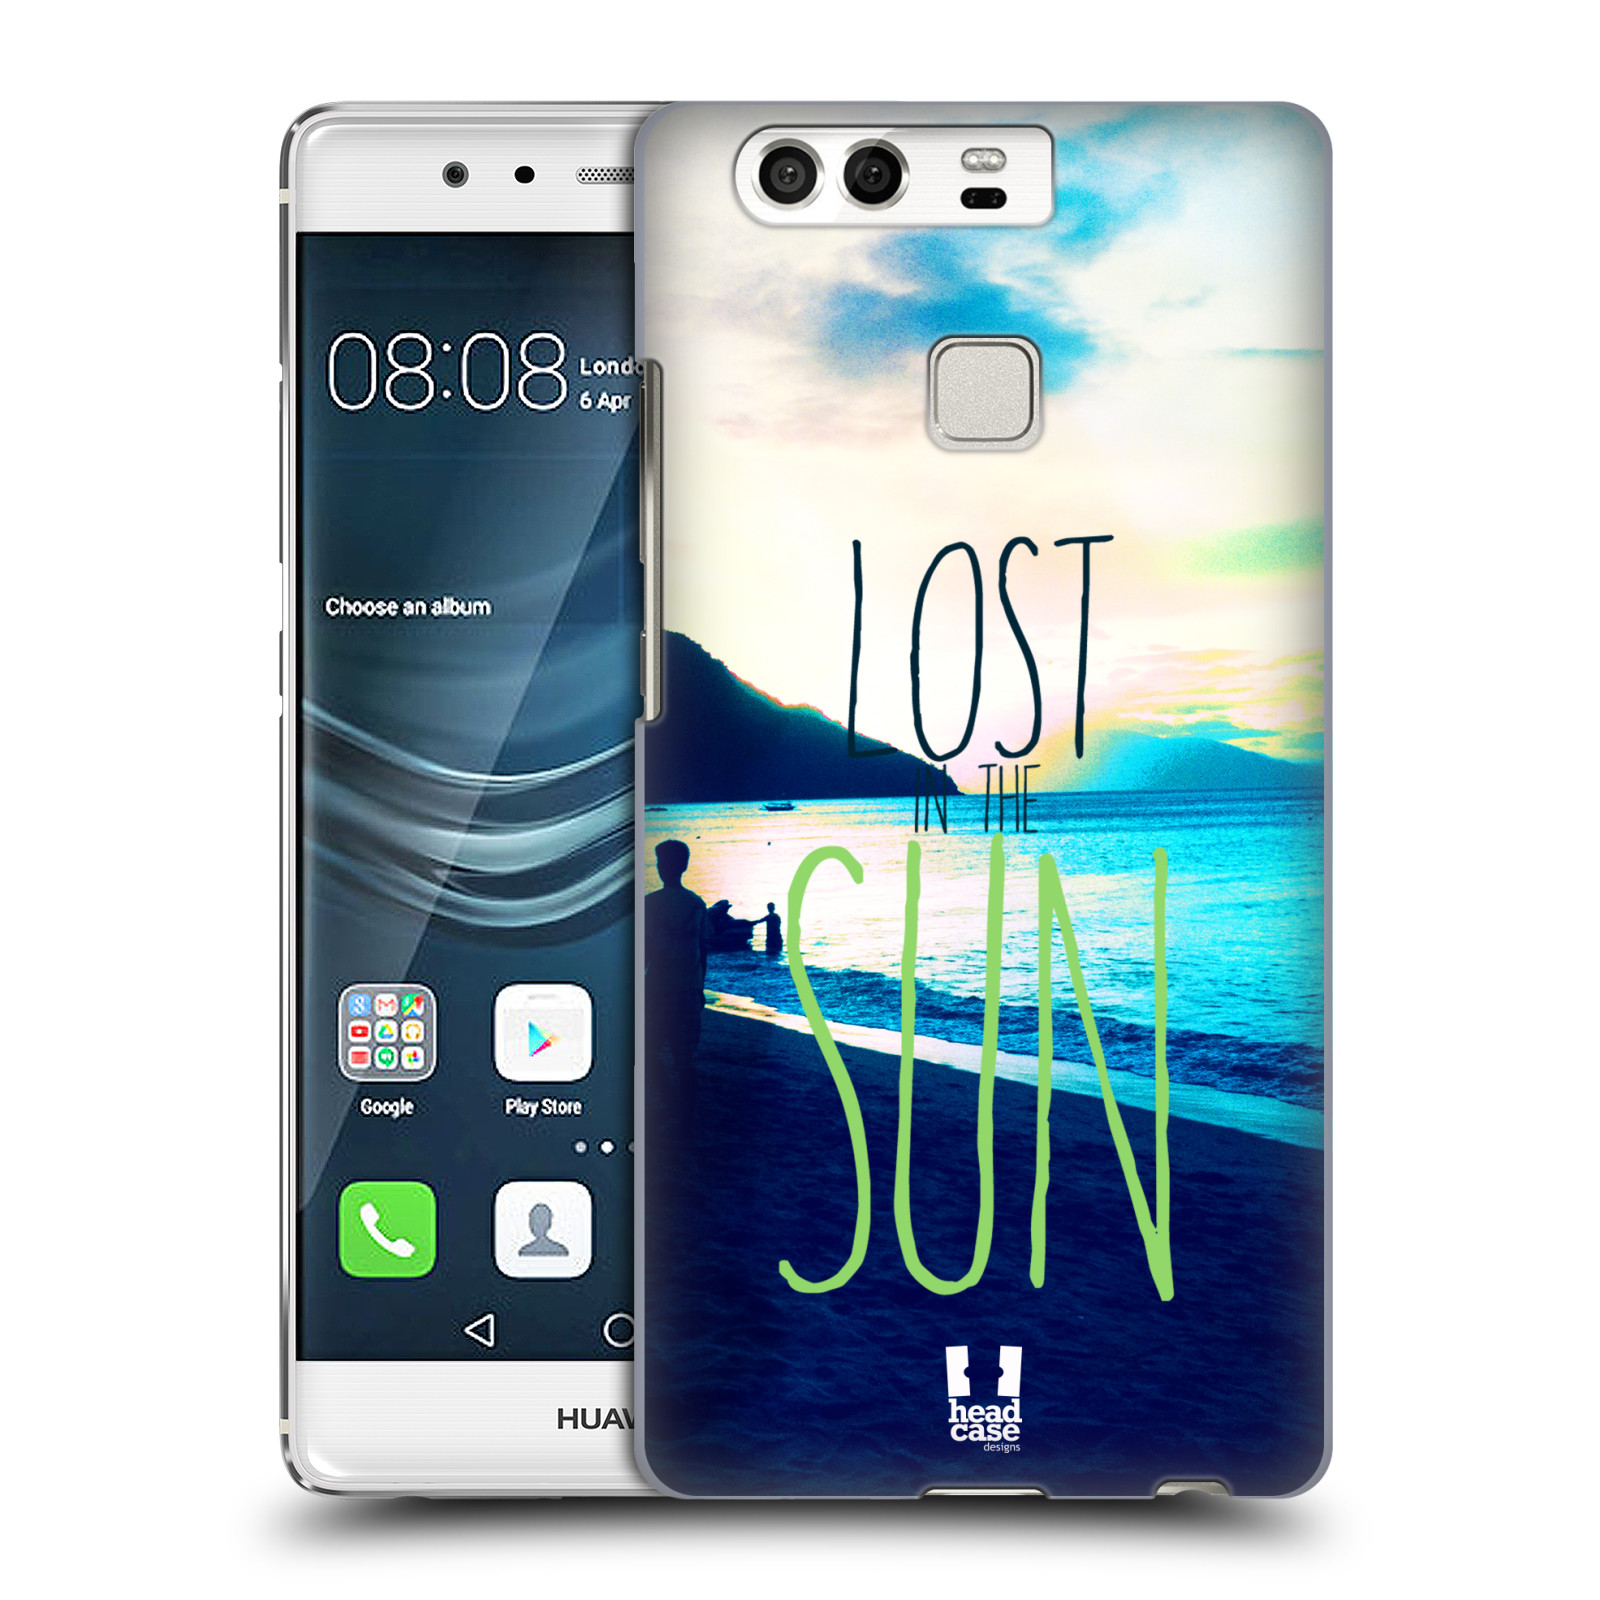 HEAD CASE plastový obal na mobil Huawei P9 / P9 DUAL SIM vzor Pozitivní vlny MODRÁ, moře, slunce a pláž LOST IN THE SUN